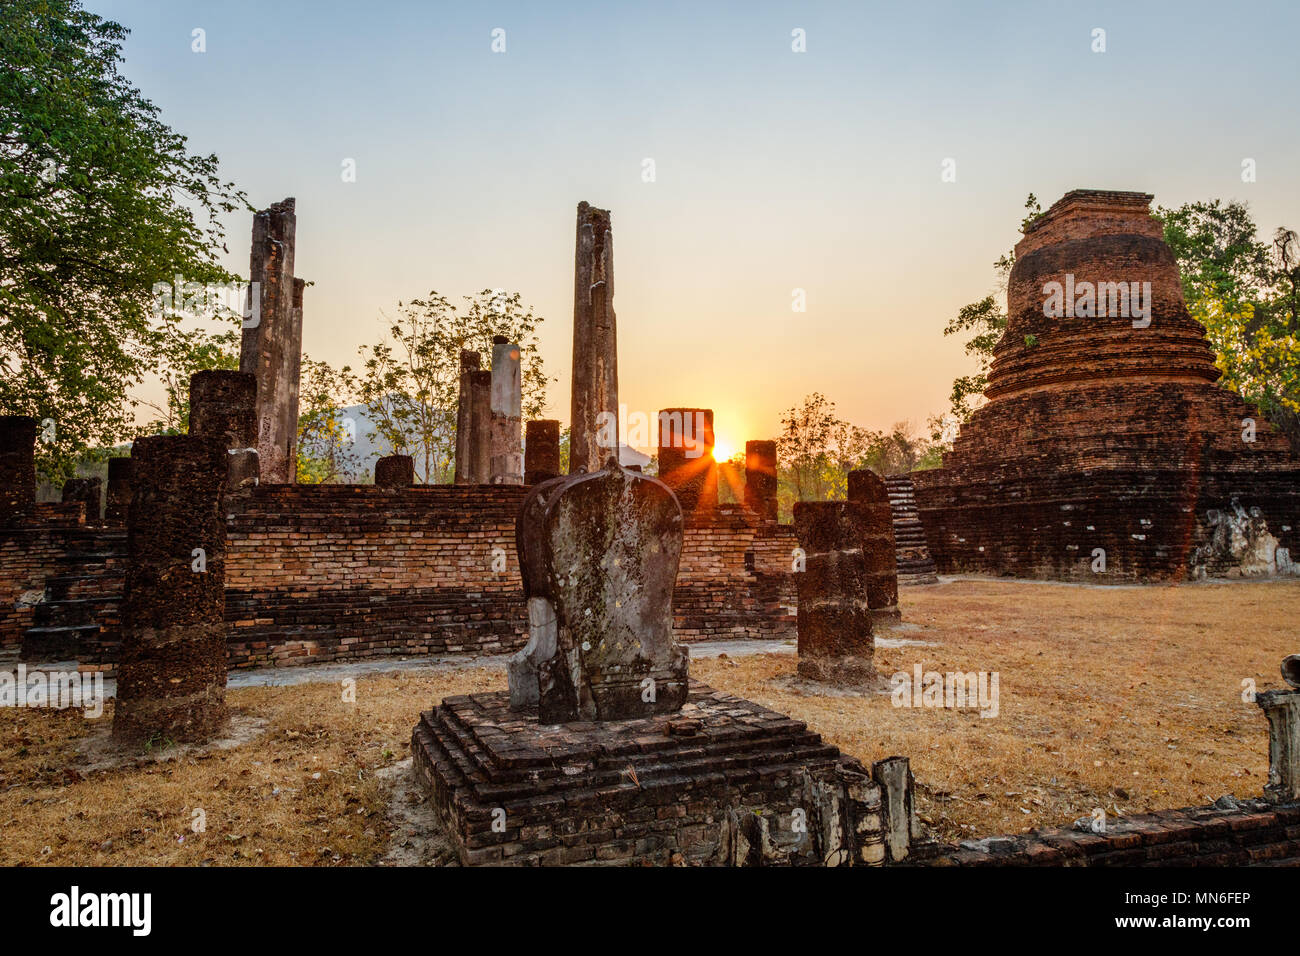 Les environs du parc historique de Sukhothai, Thaïlande, au lever du soleil Banque D'Images